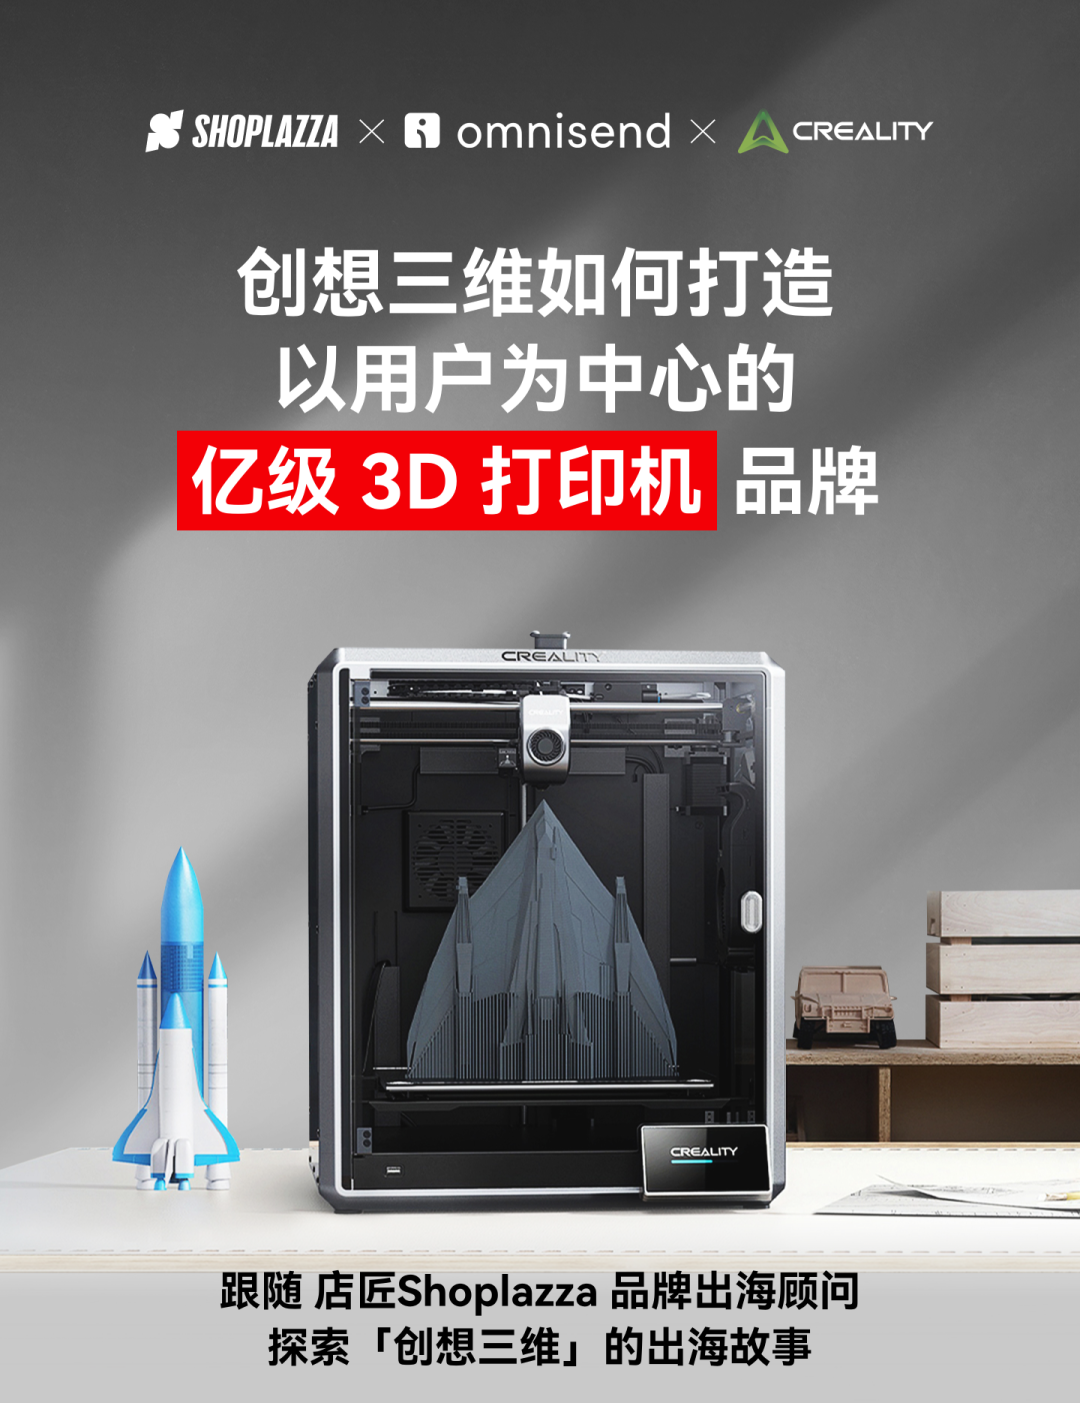 出海生意经｜创想三维如何打造以用户为中心的亿级 3D 打印机品牌？